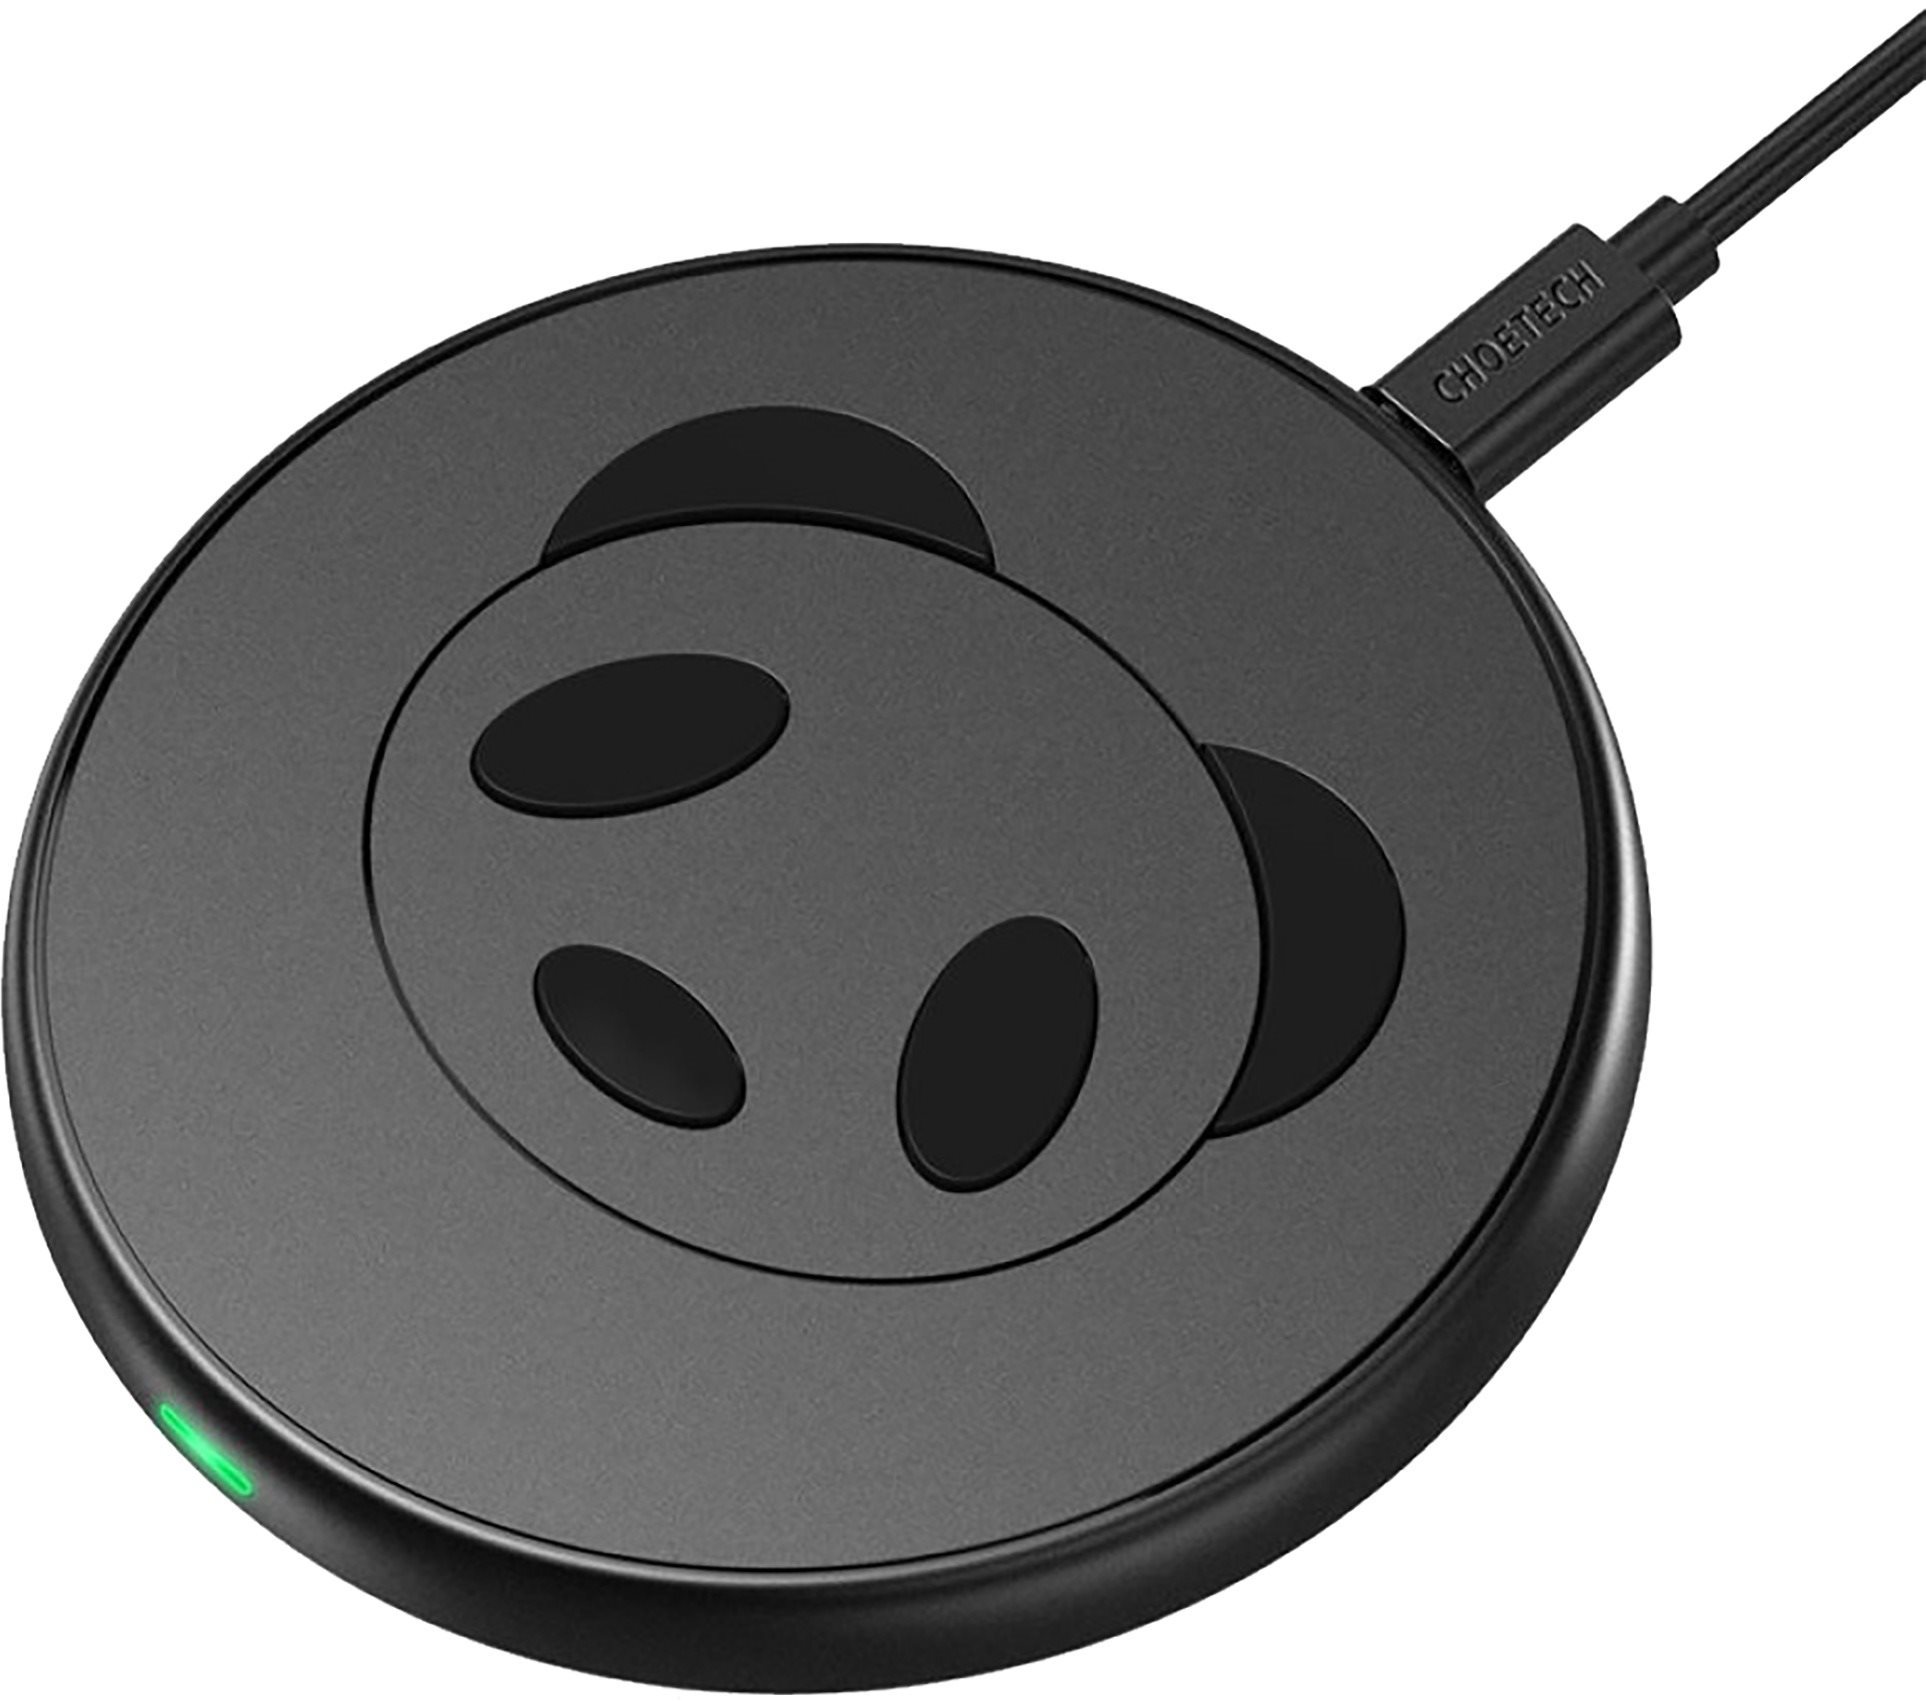 ChoeTech 10W Fast Wireless Charging Pad Panda Style